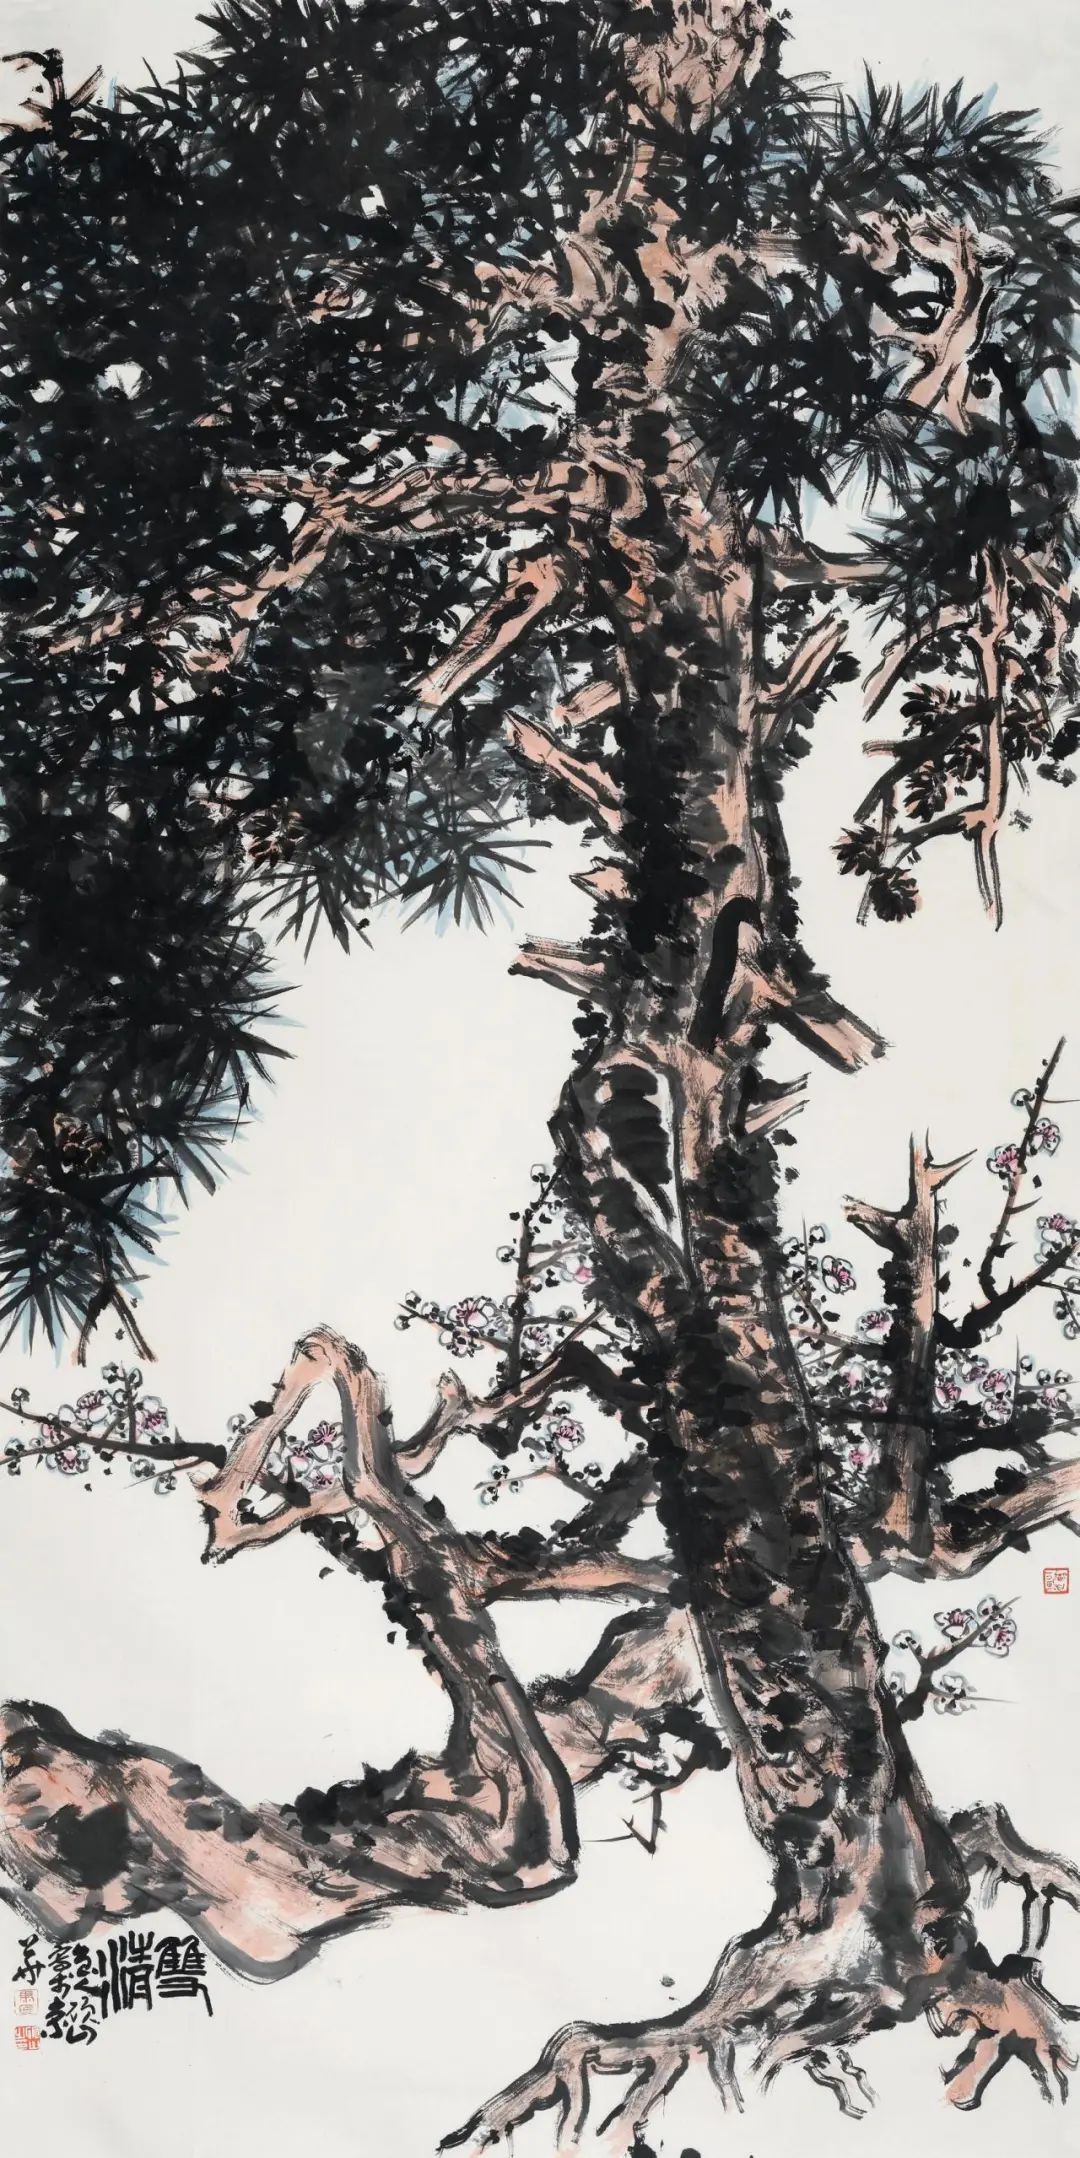 马硕山的水墨花鸟——江山代有才人出 书画精进上层楼